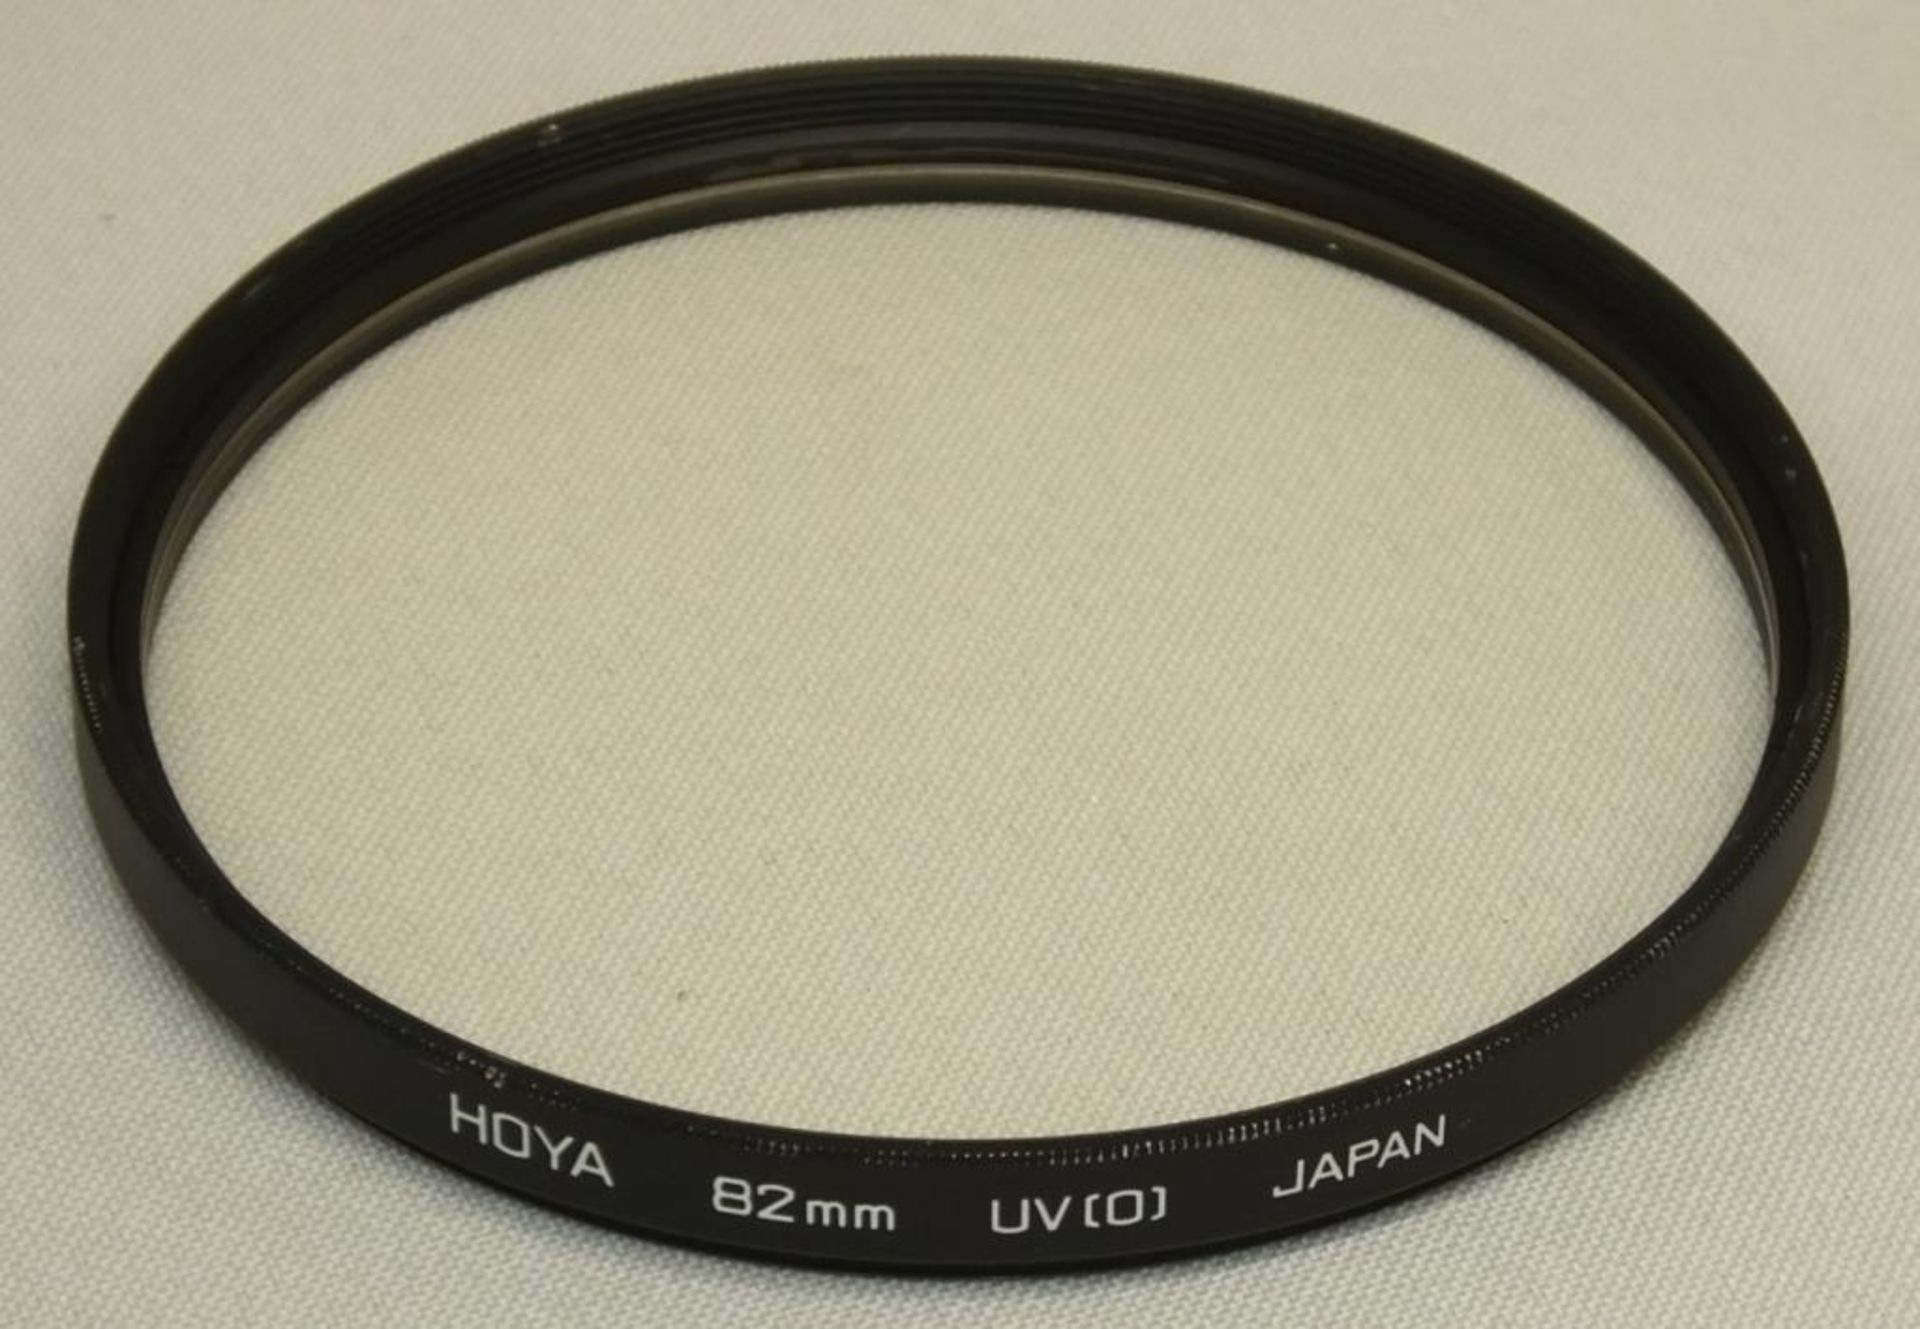 Nikon ED AF Nikkor 300mm - 1:4 Lens - Serial No. 201945 with HOYA 82mm UV(O) Filter in Nikon case - Image 7 of 8